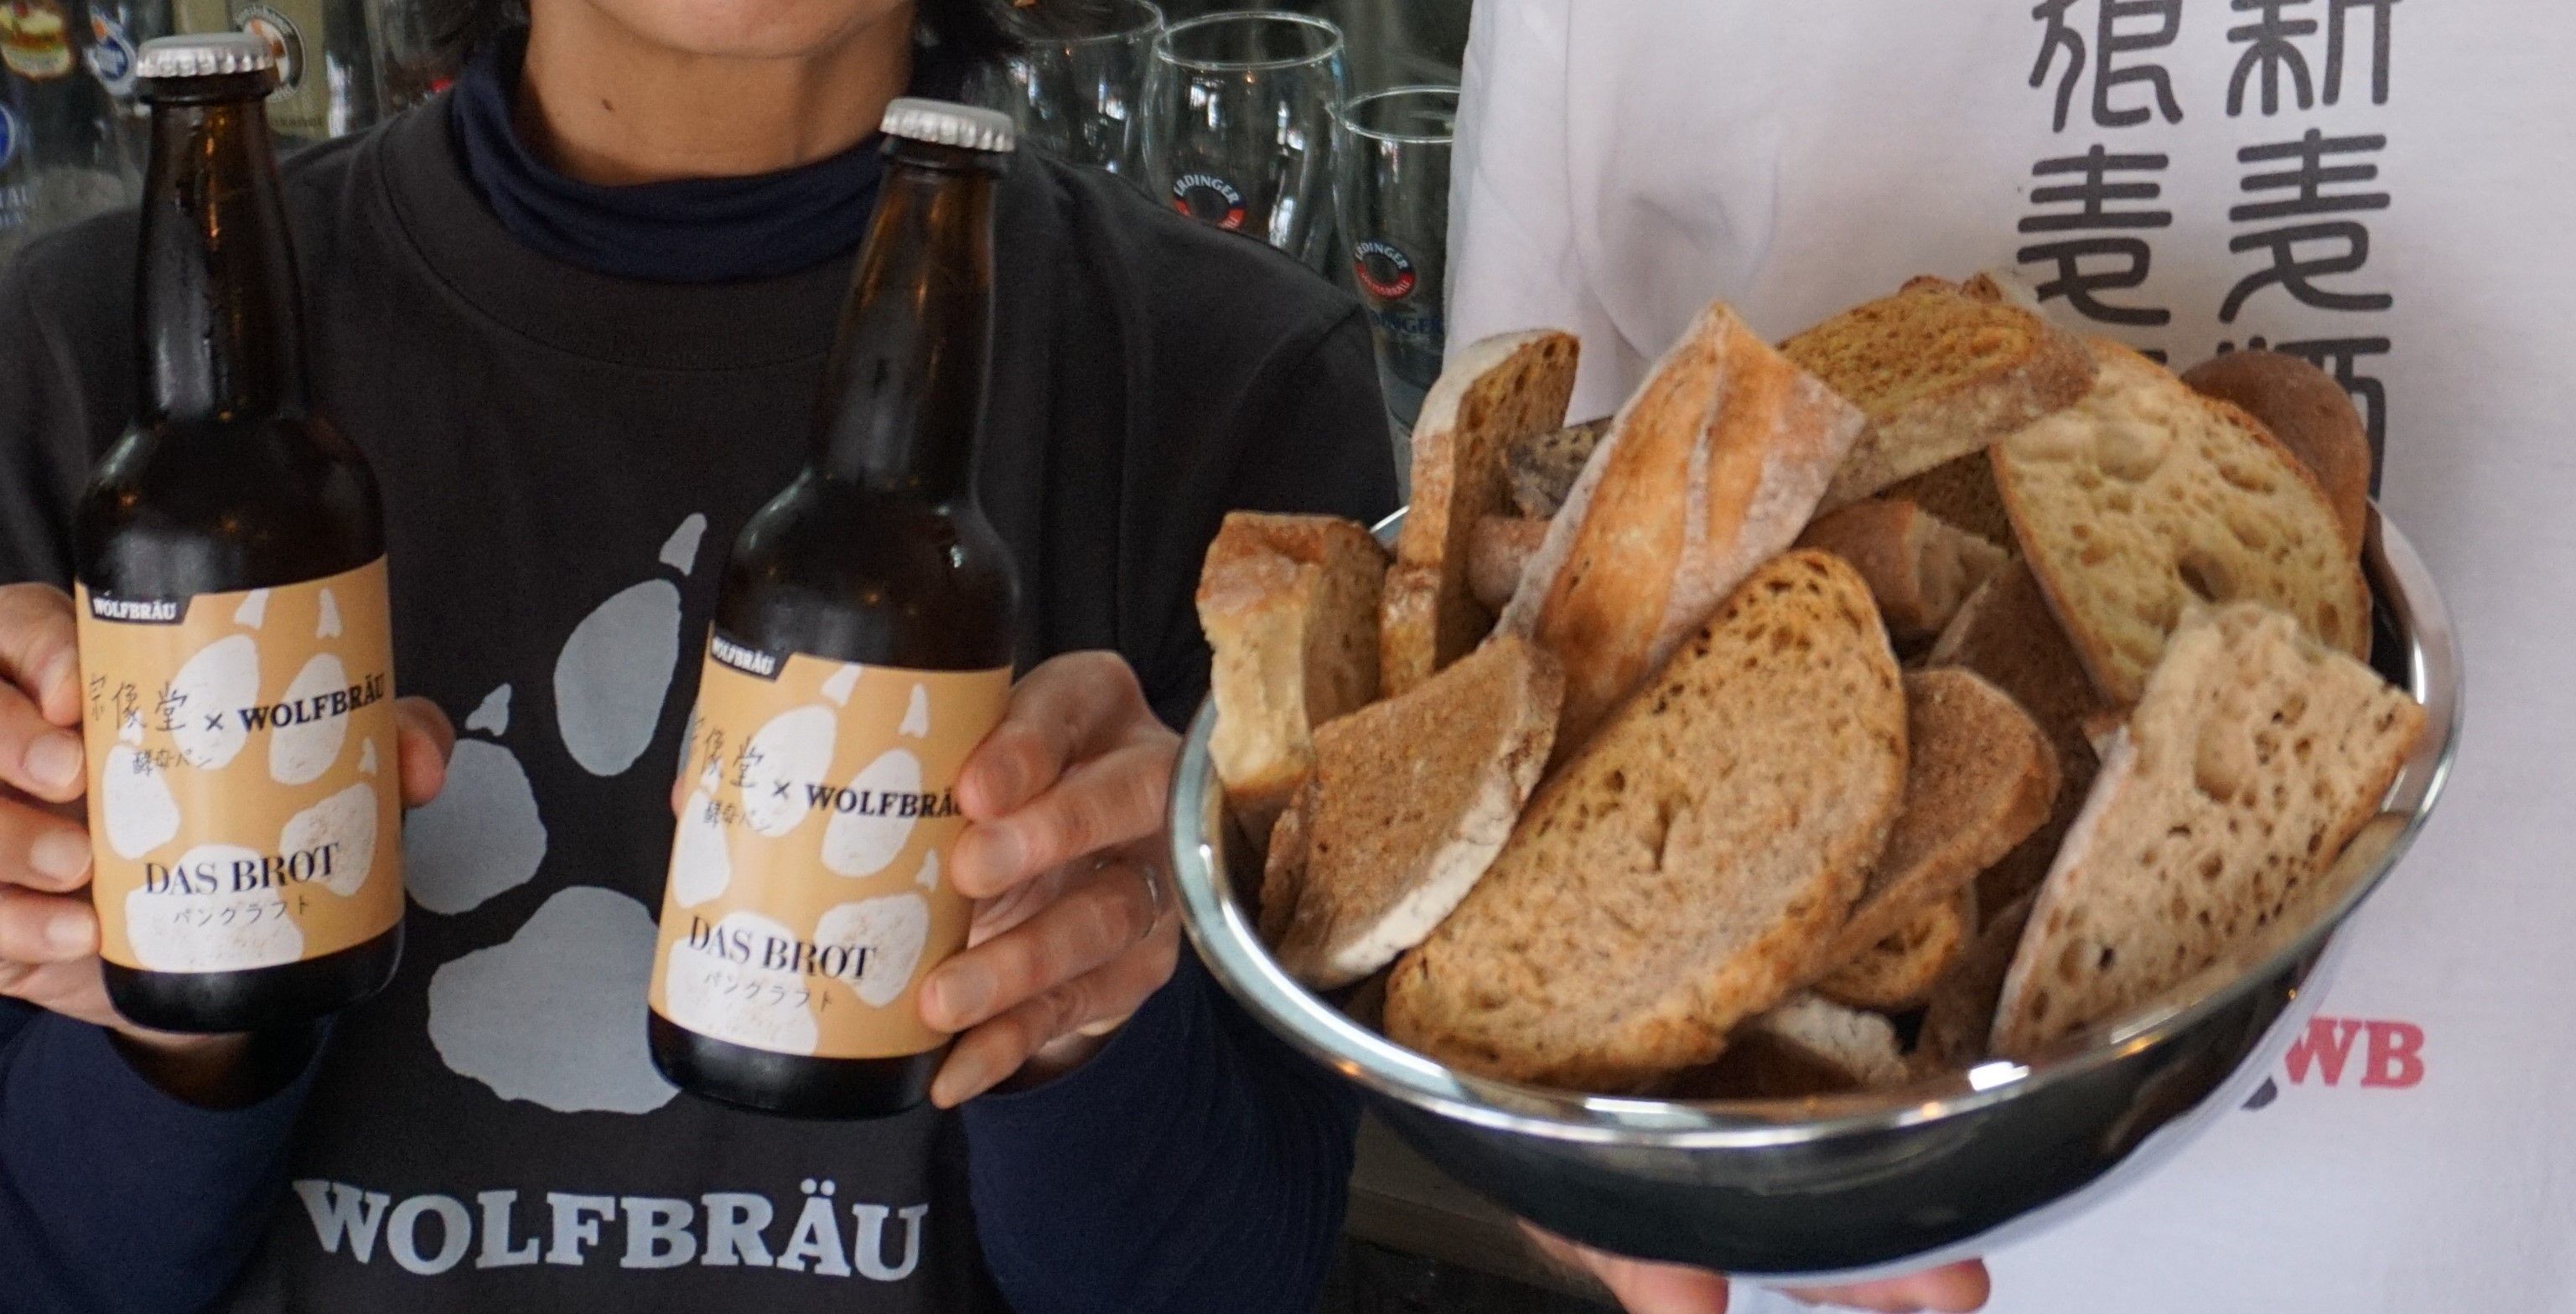 ビール パンの味わいは ドイツ出身の職人が１年かけて実現 沖縄タイムス プラス ニュース 沖縄タイムス プラス